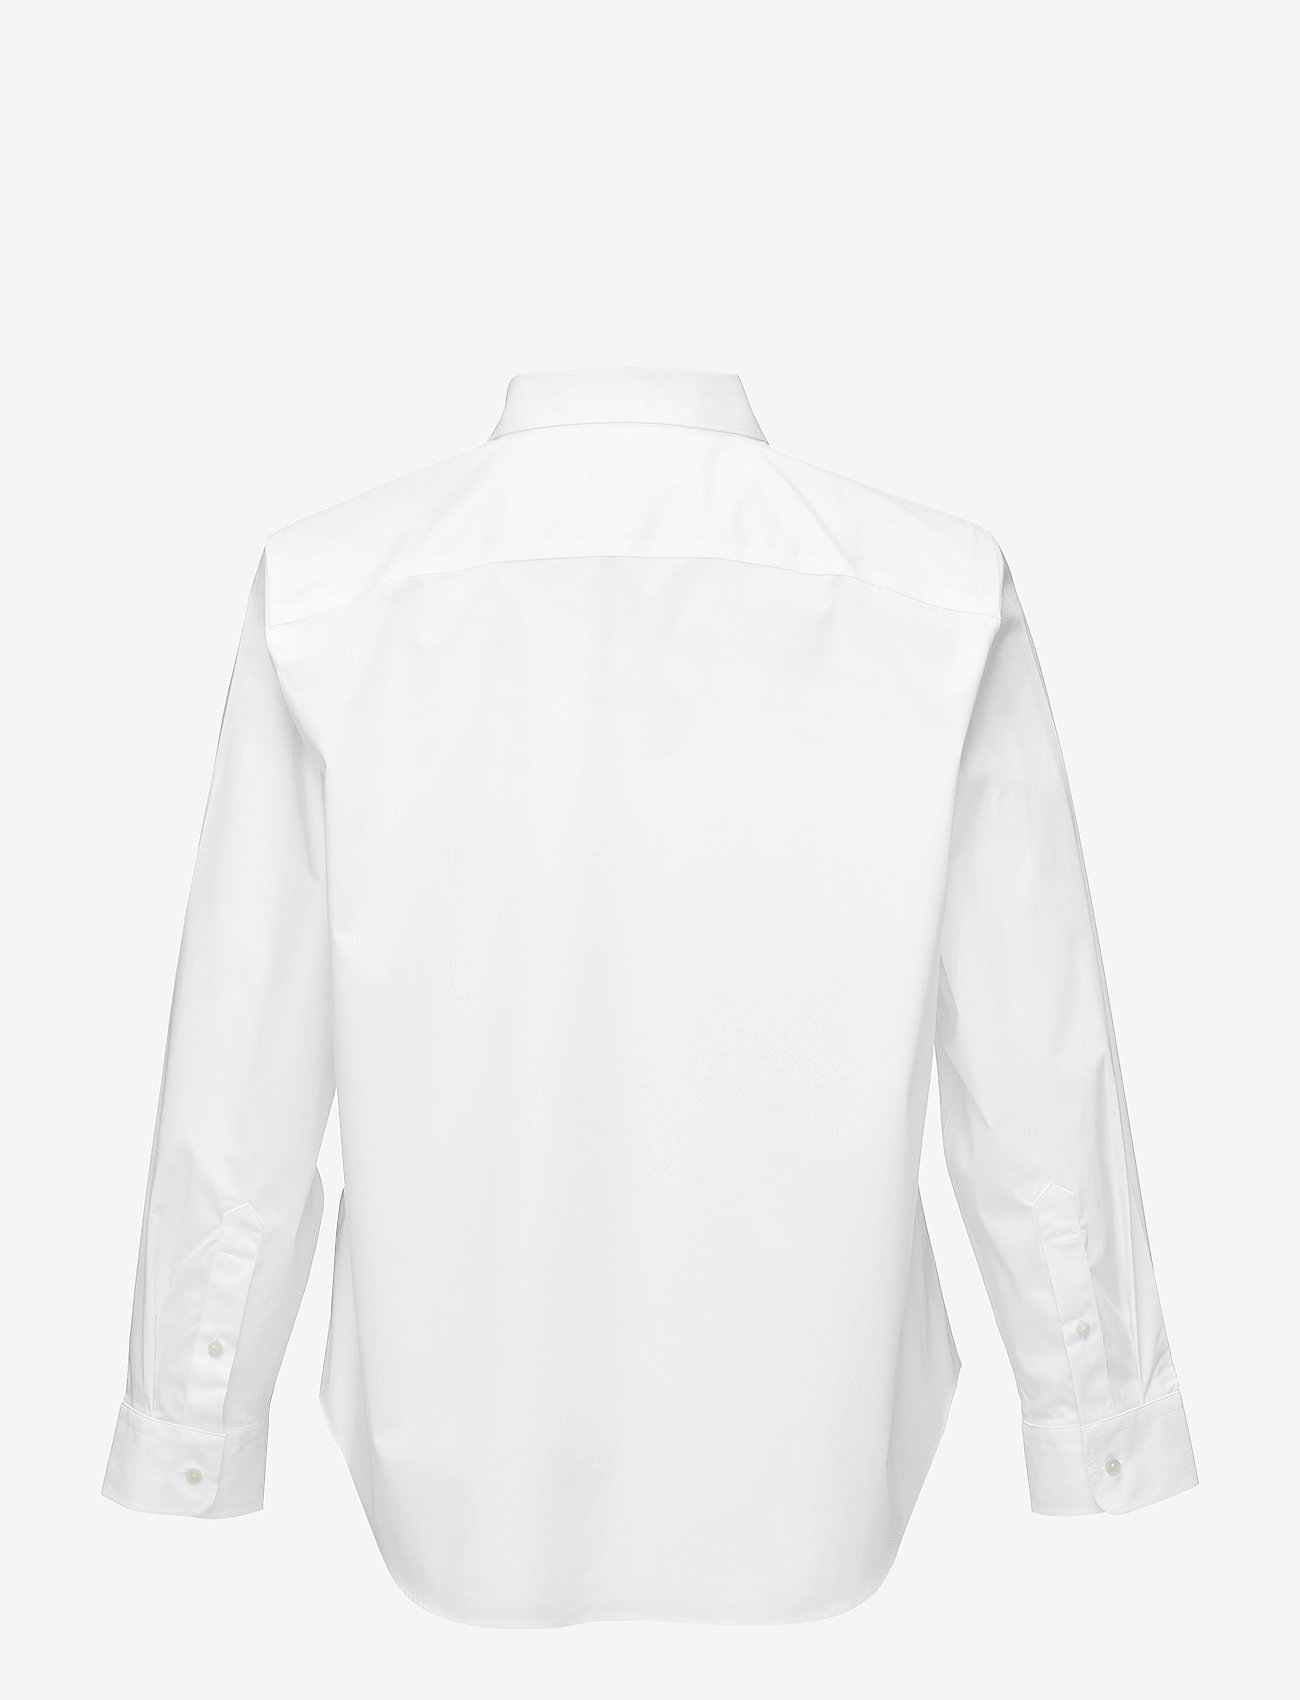 Lauren Women - No-Iron Stretch Cotton Shirt - long-sleeved shirts - white - 1